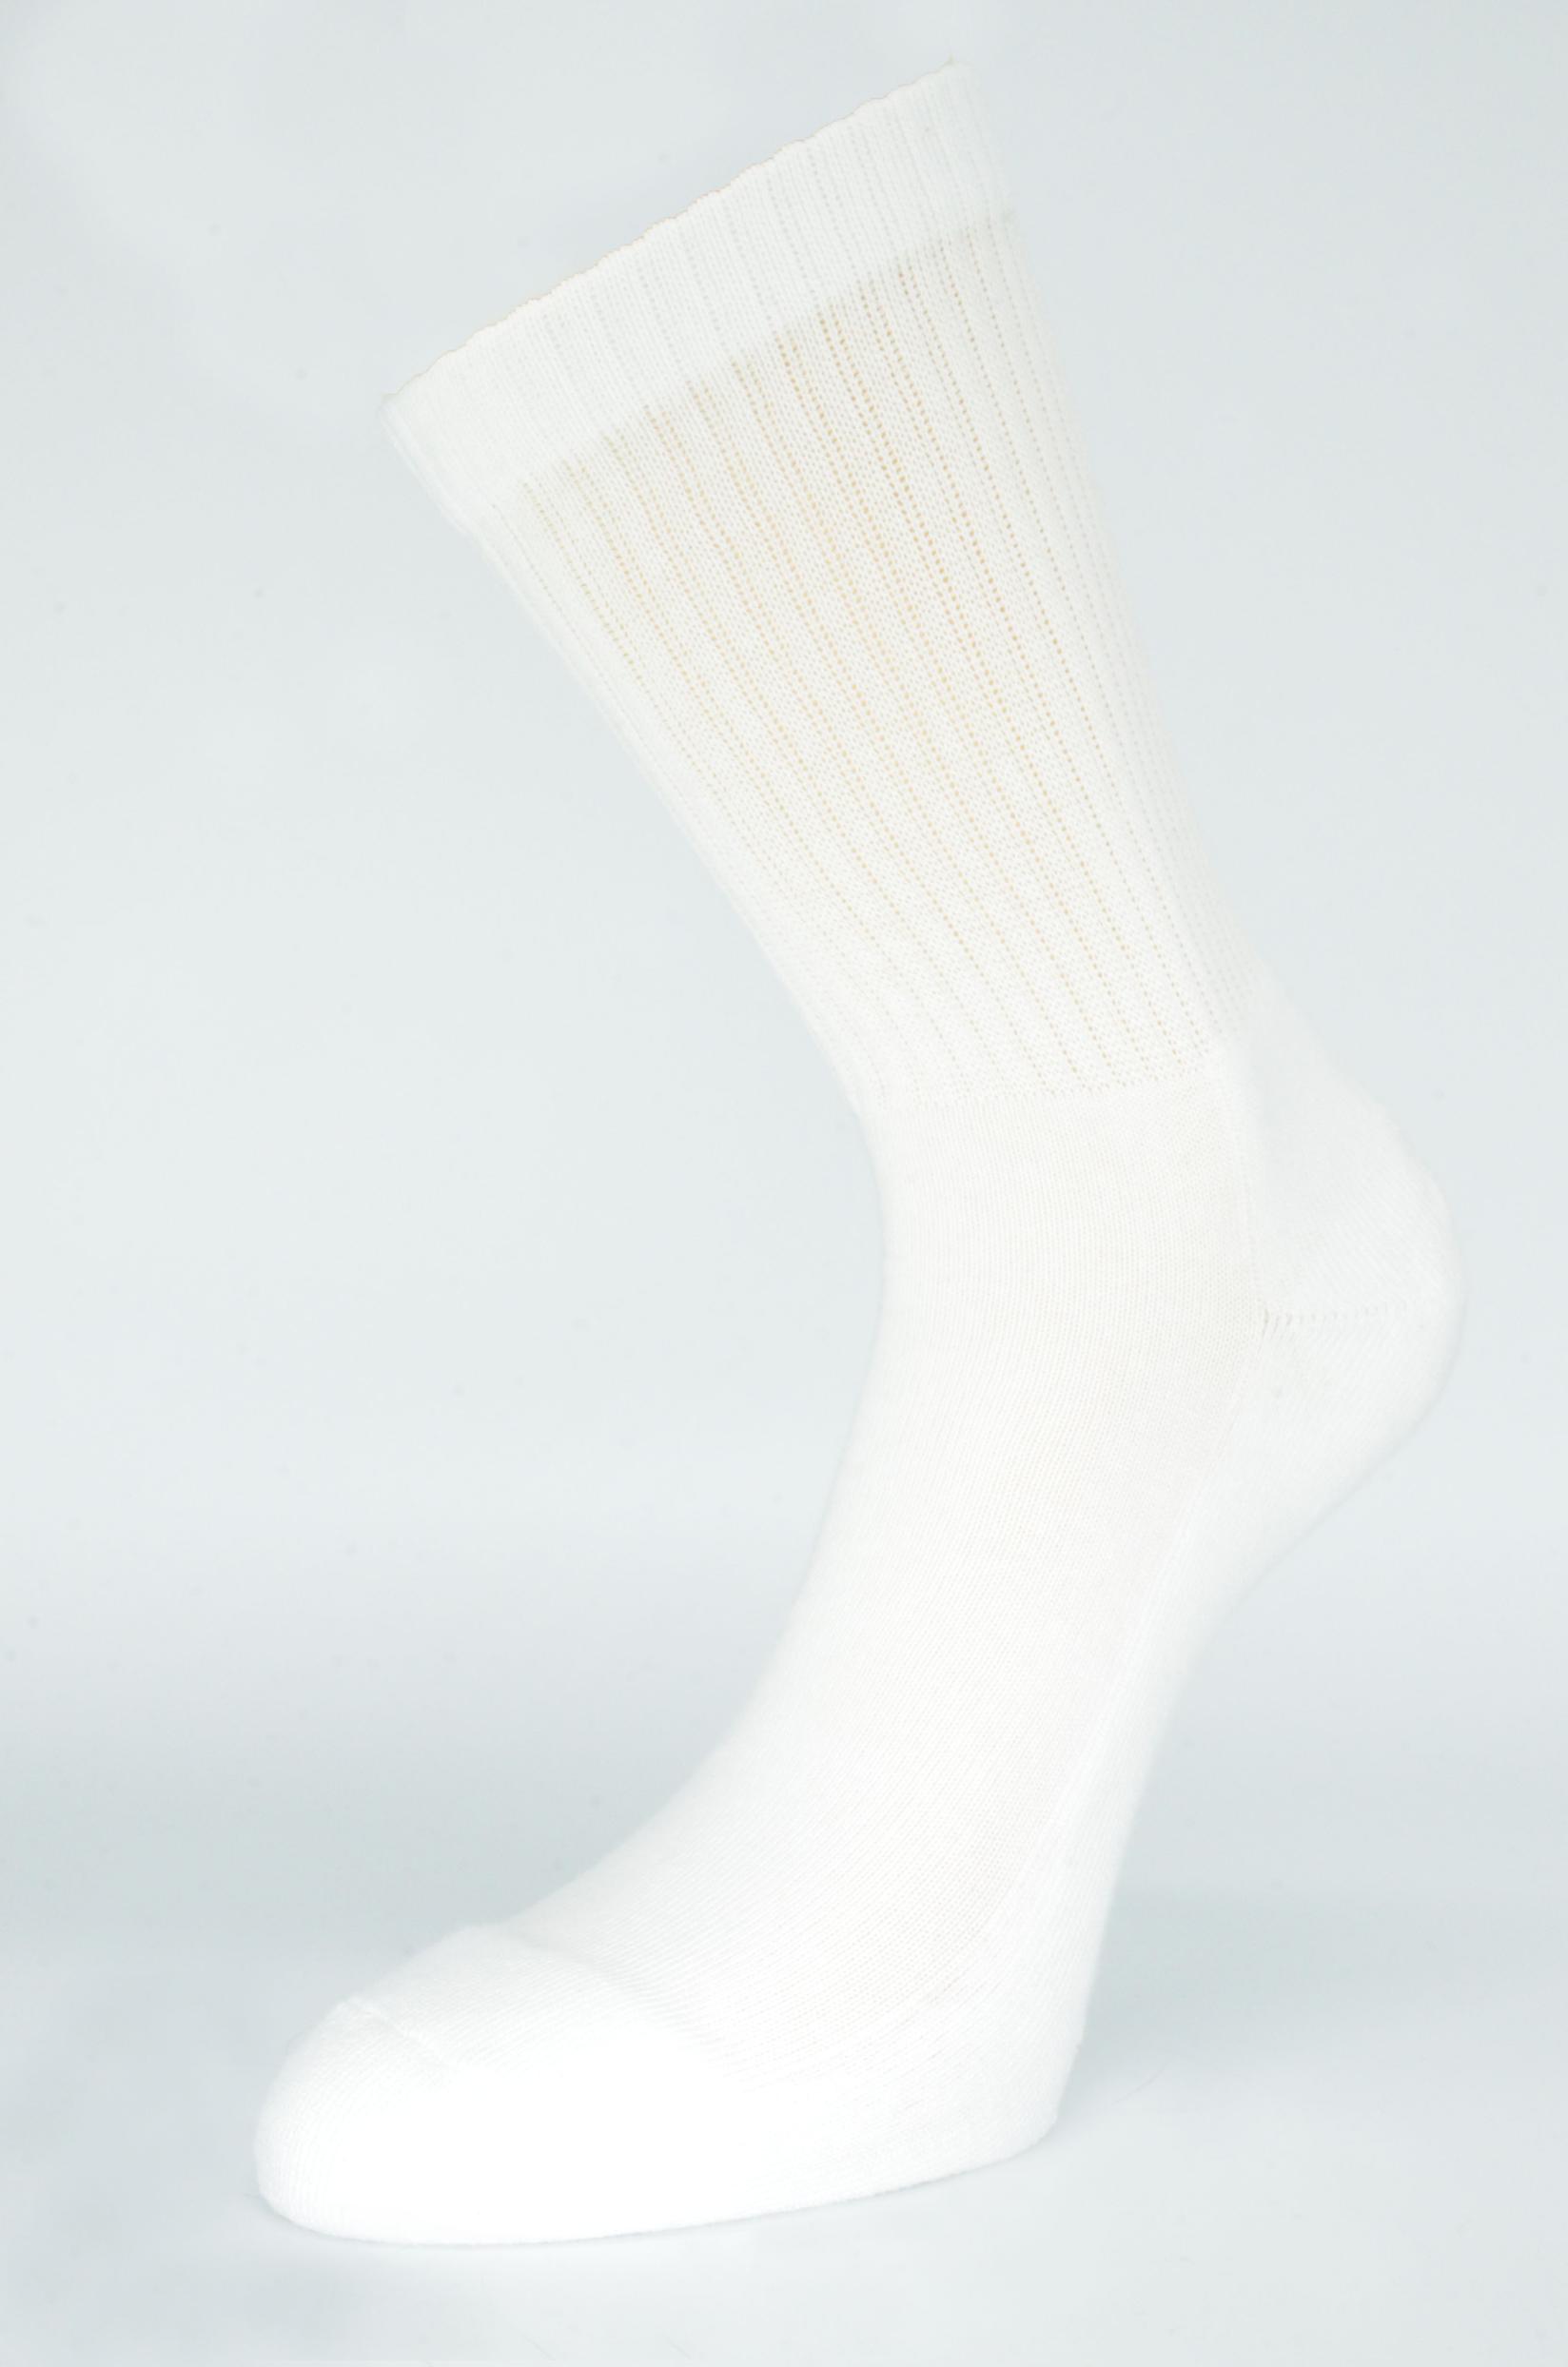 GERBI Sportske čarape Sport Style m1 bele